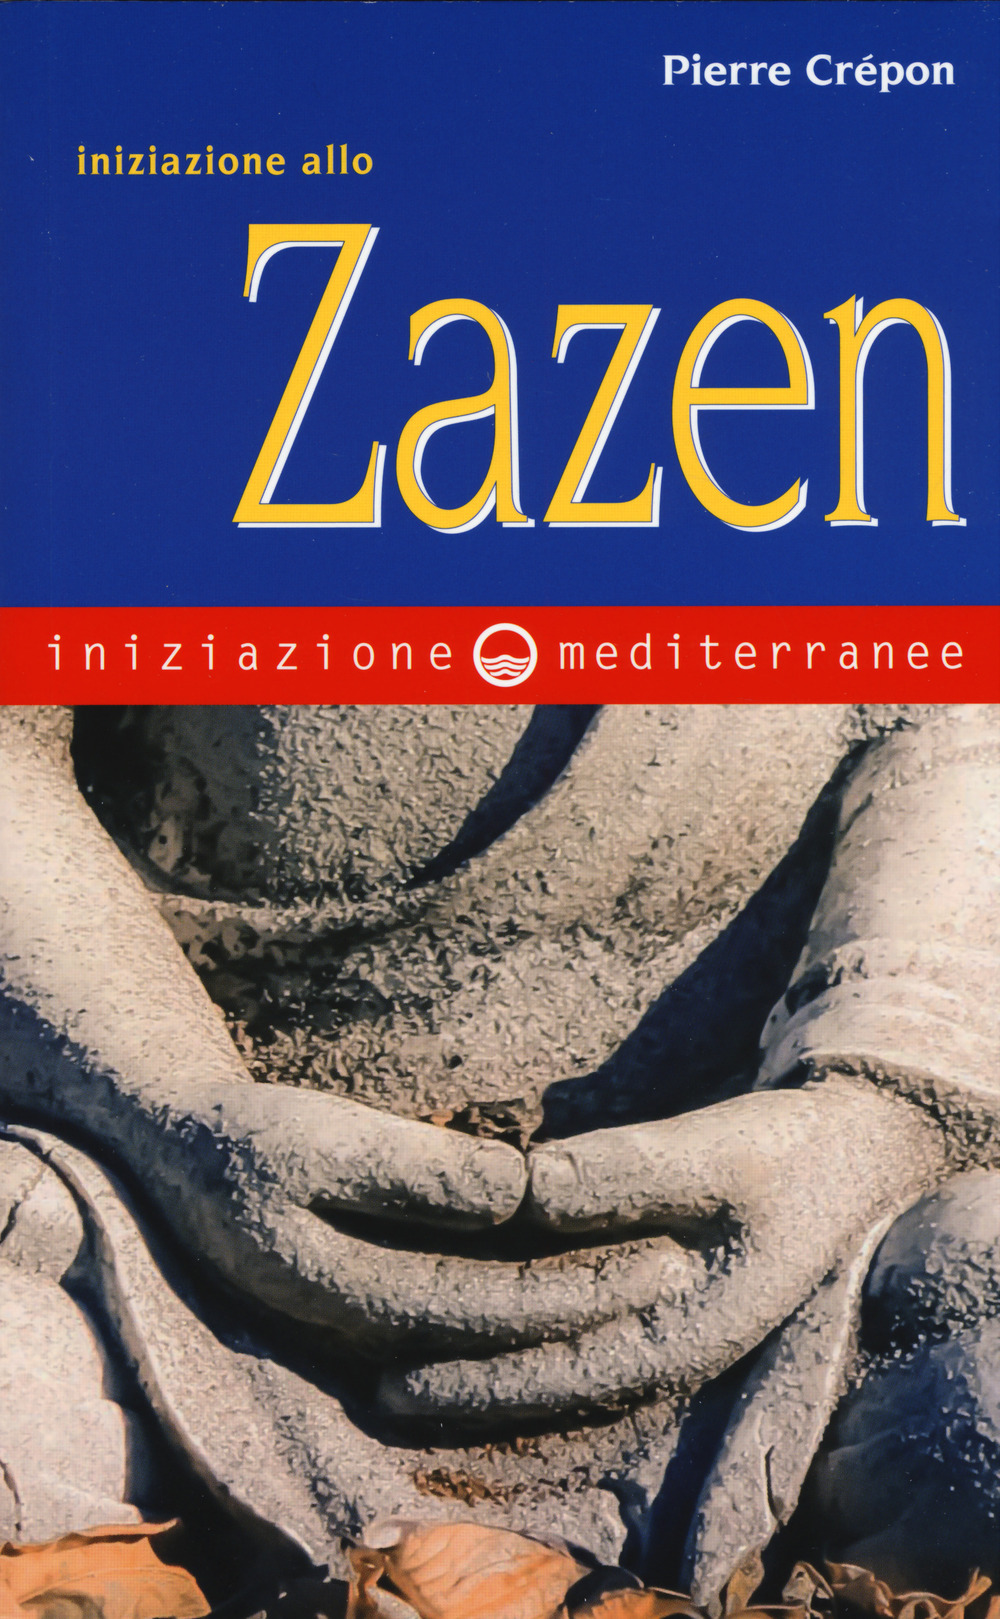 Image of Iniziazione allo zazen